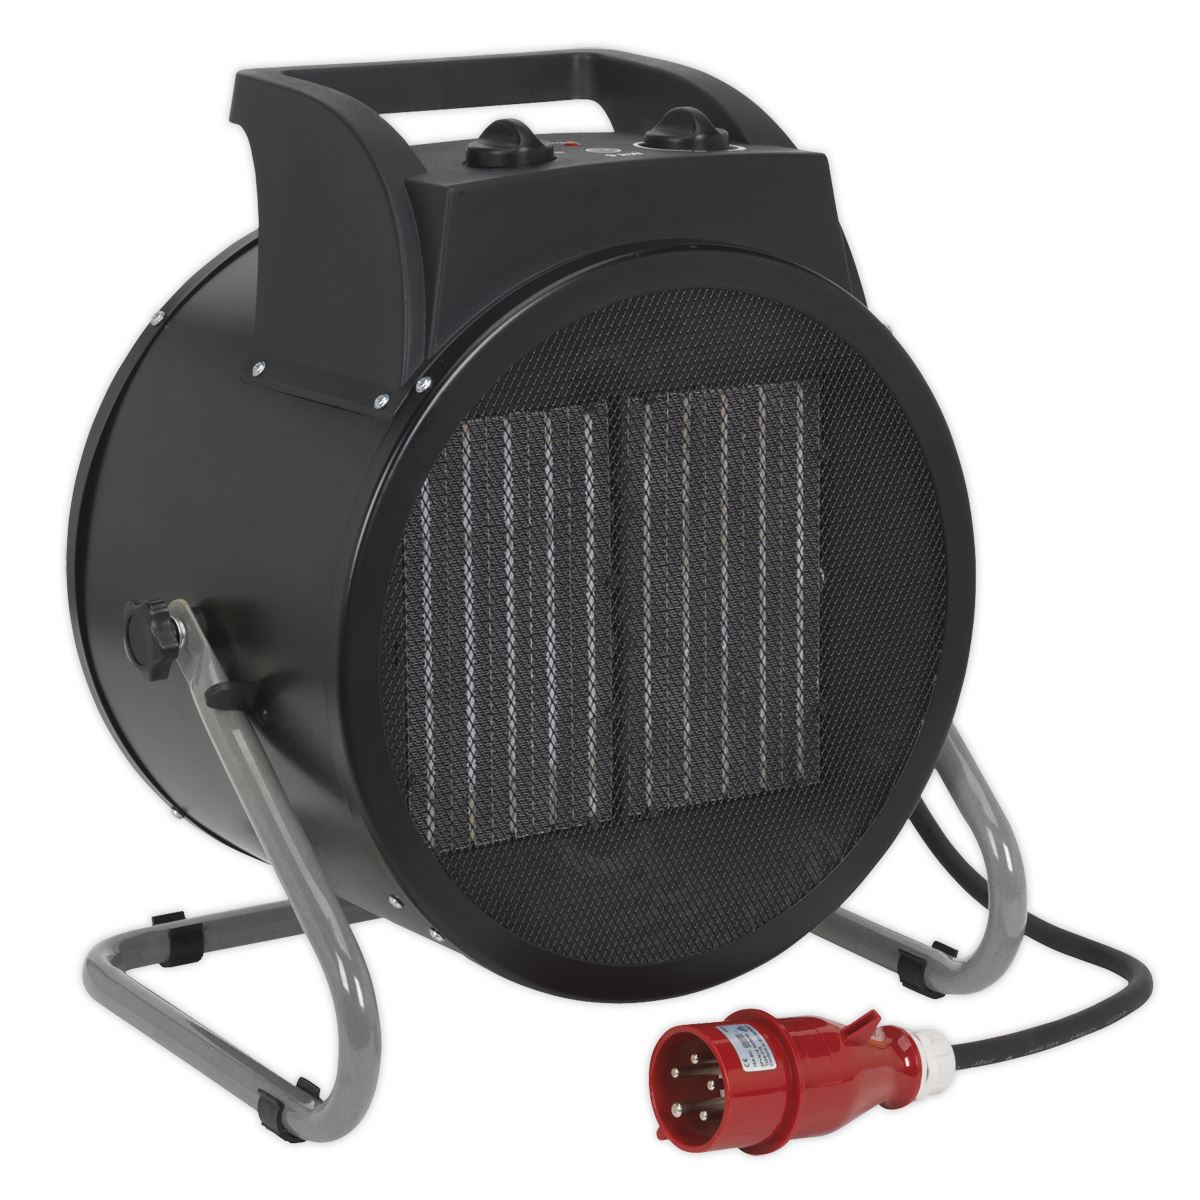 Sealey Industrial PTC Fan Heater 9000W 415V 3ph